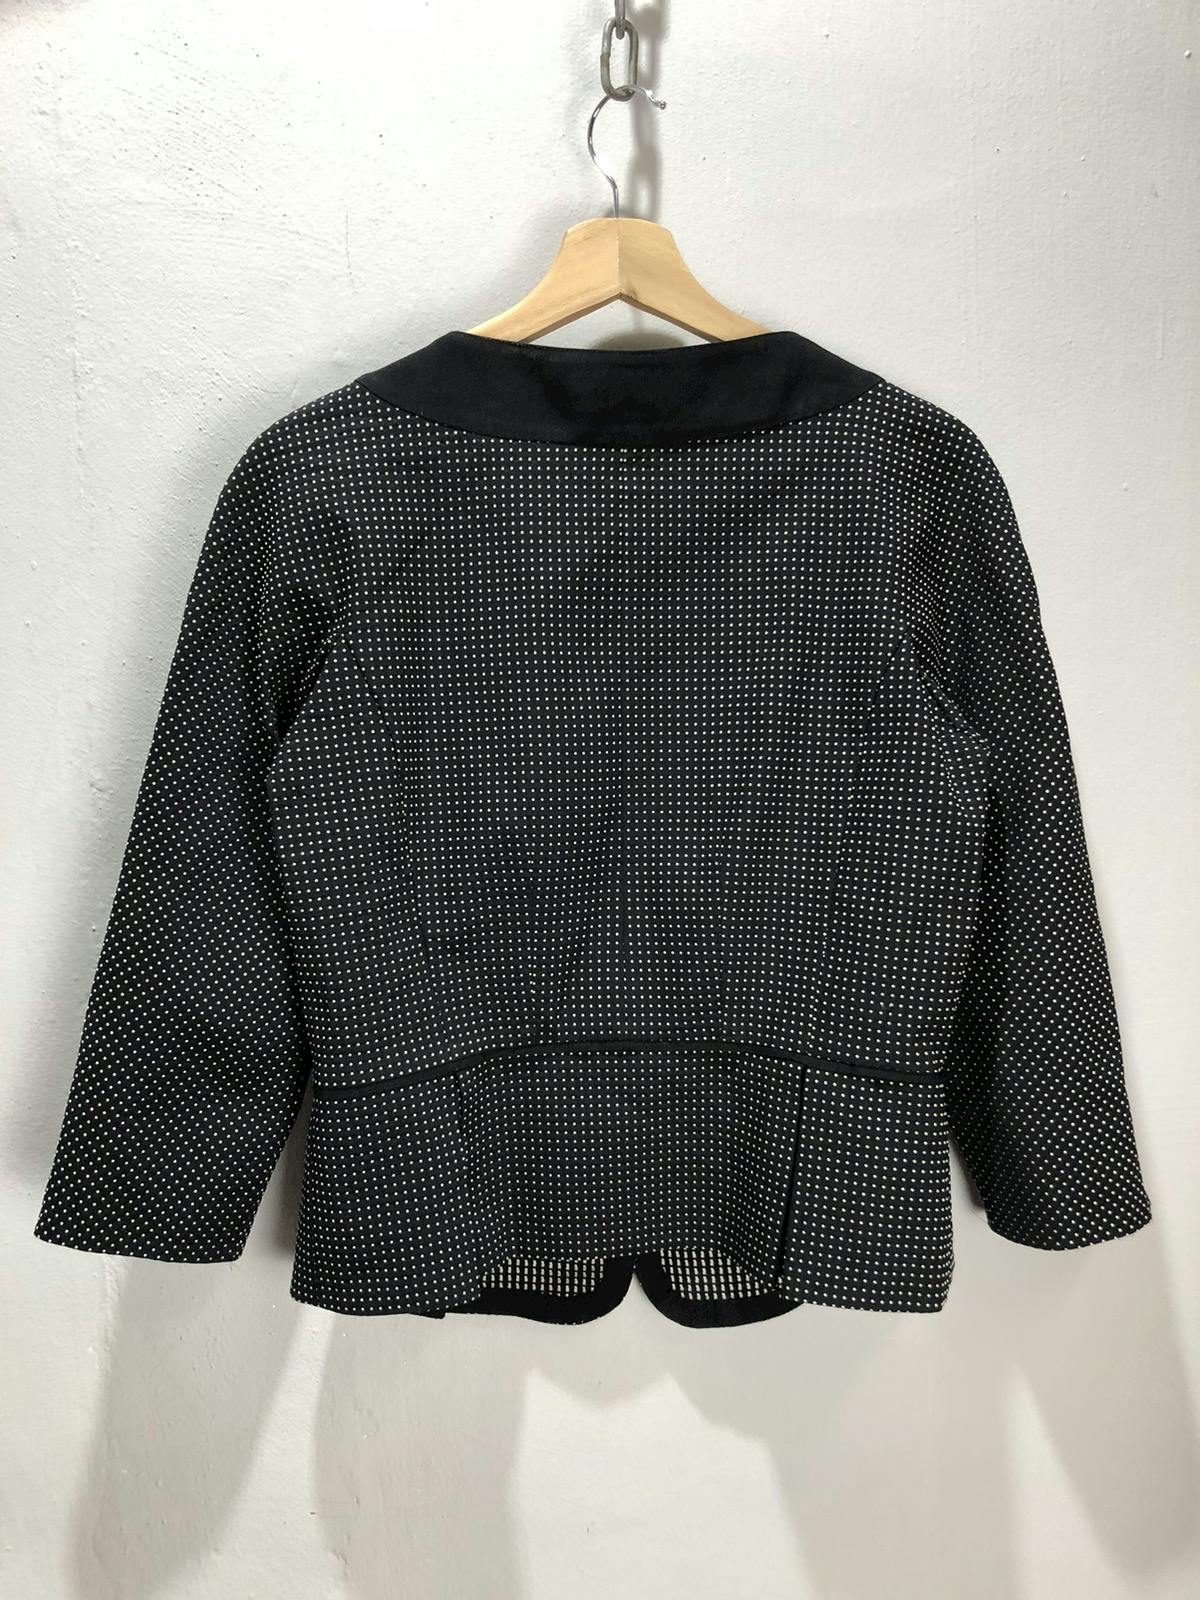 Lanvin blazer/jacket nice design - 4